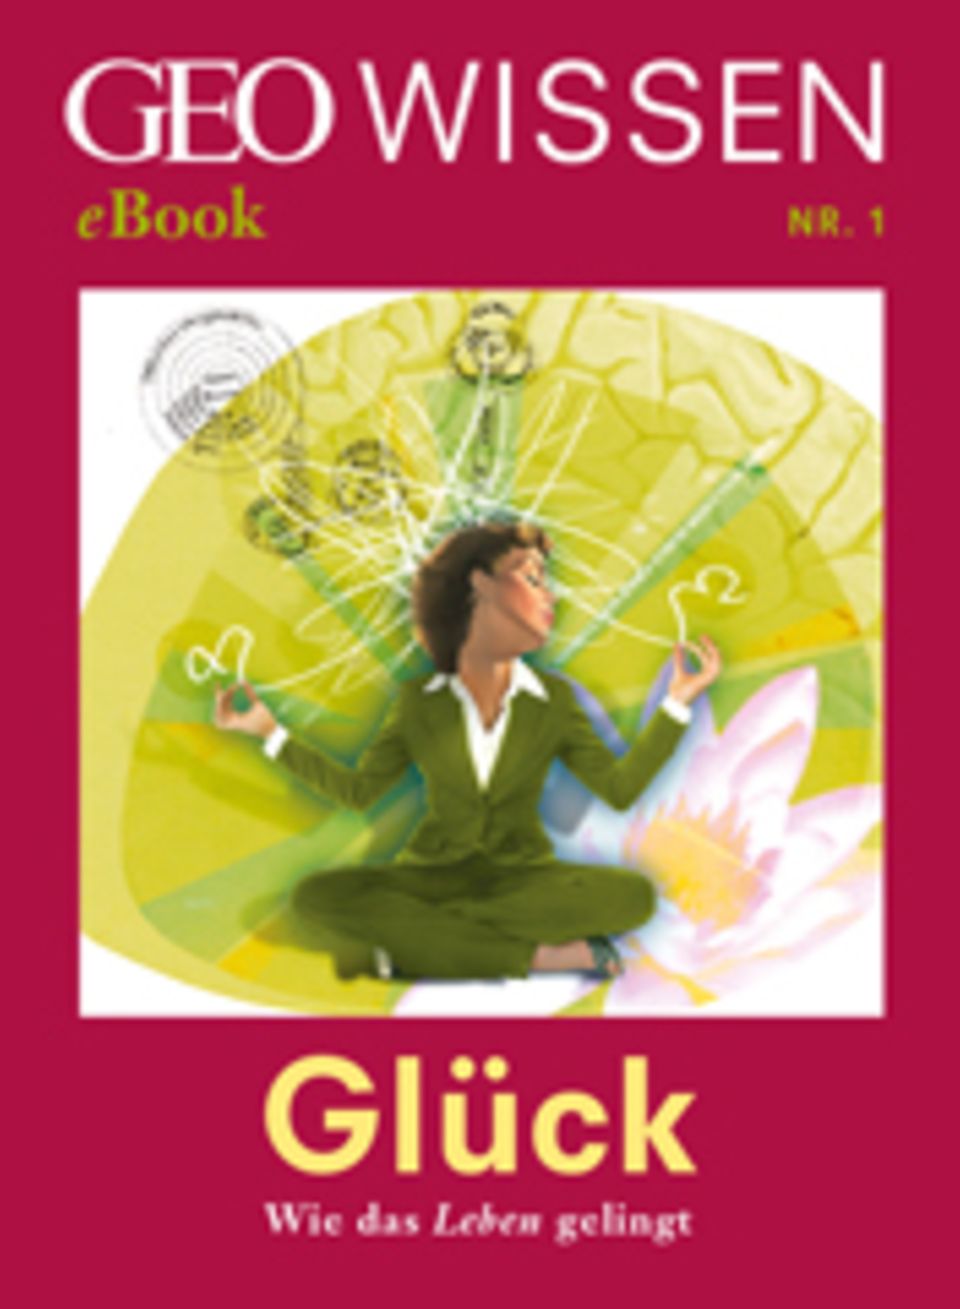 Glück: Wie das Leben gelingt: GEO WISSEN eBook "Glück"